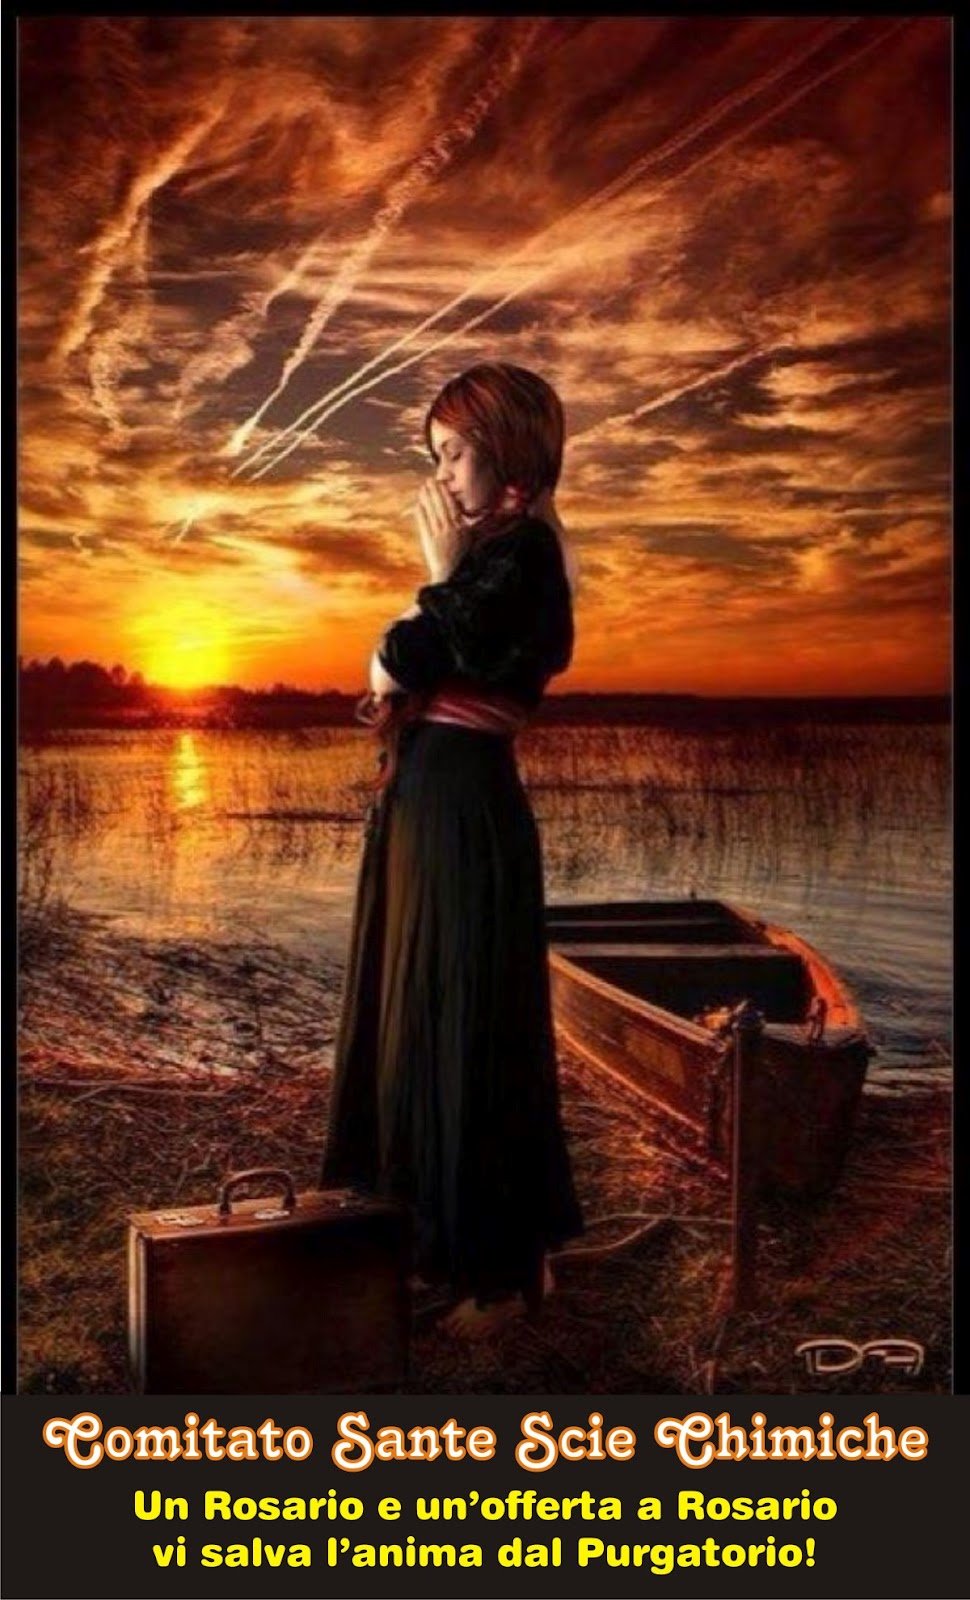 Вечер женщина картинки. Девушка у реки. Девушка провожает корабль. Одинокая девушка у реки. Женщина молится на закате.